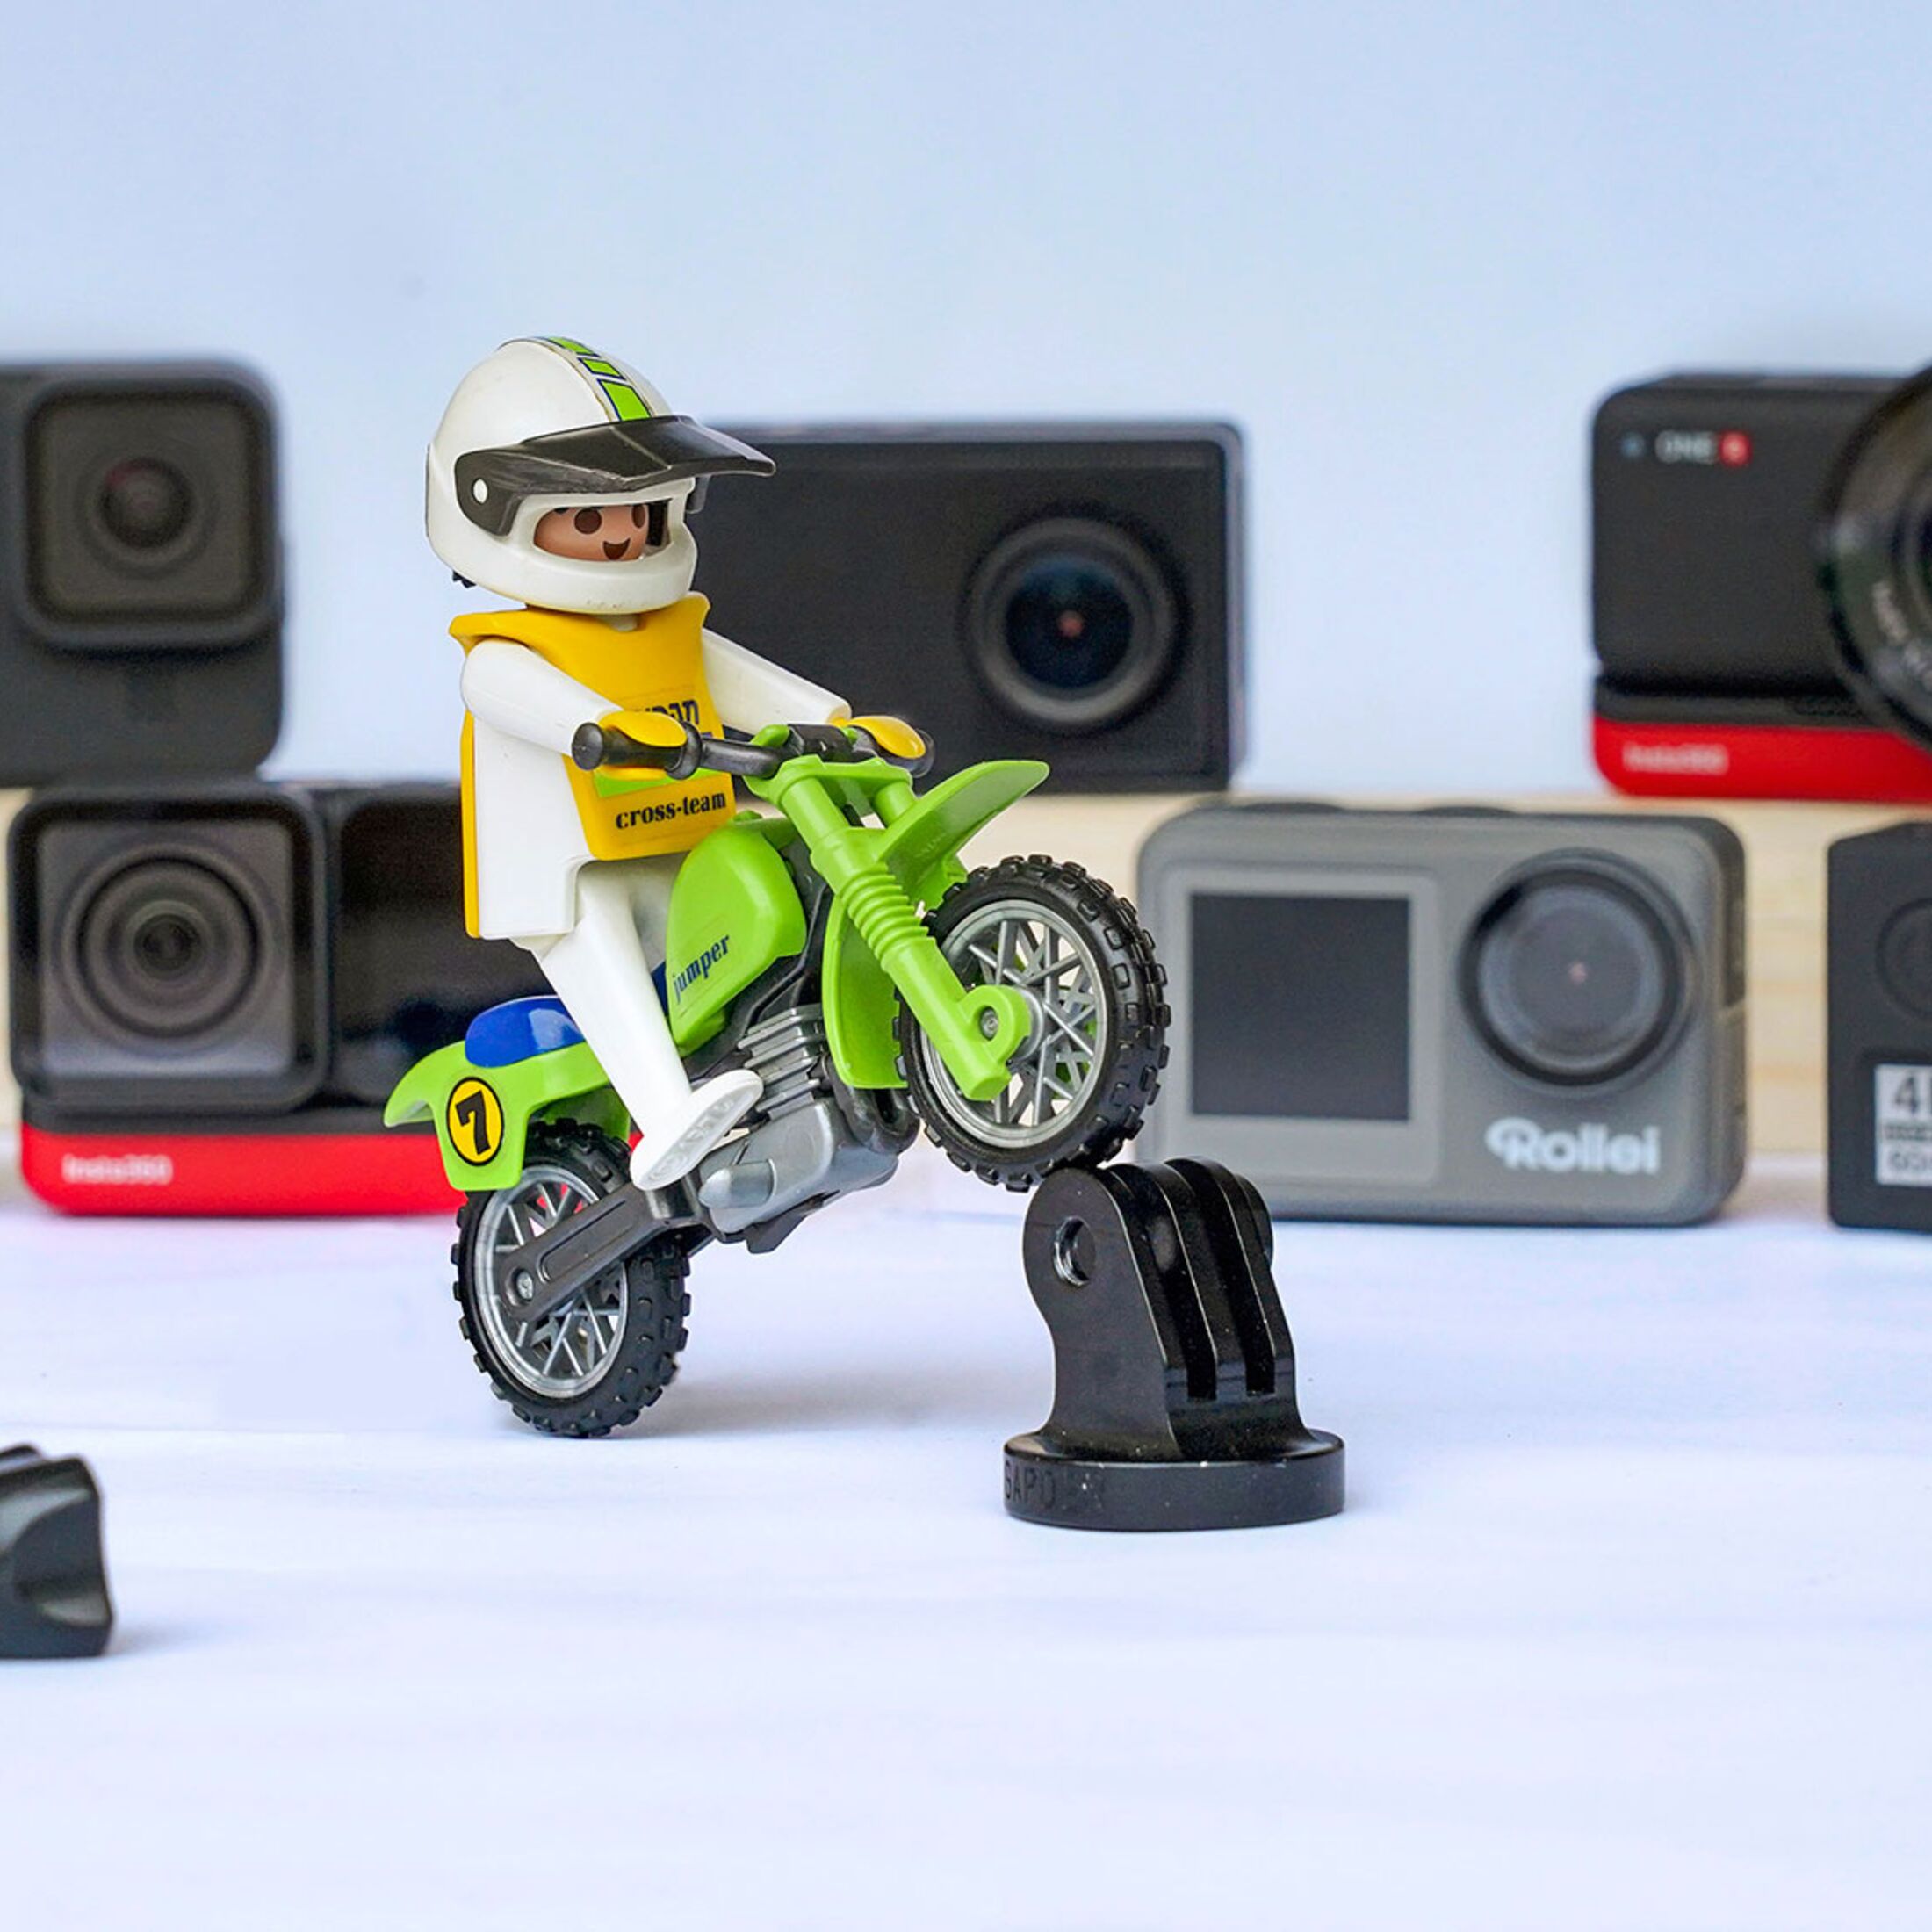 10 aktuelle Actioncams & Dashcams für Motorradfahrer im Test